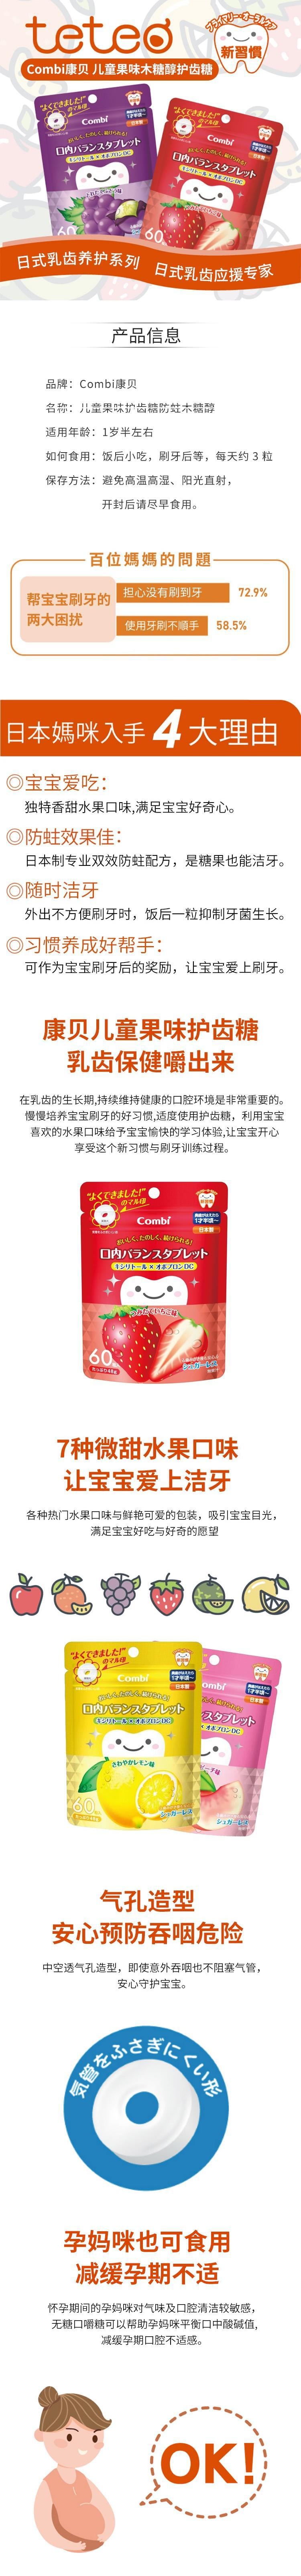 【日本直邮】COMBI康贝 儿童果味护齿糖防蛀木糖醇 草莓味 60粒